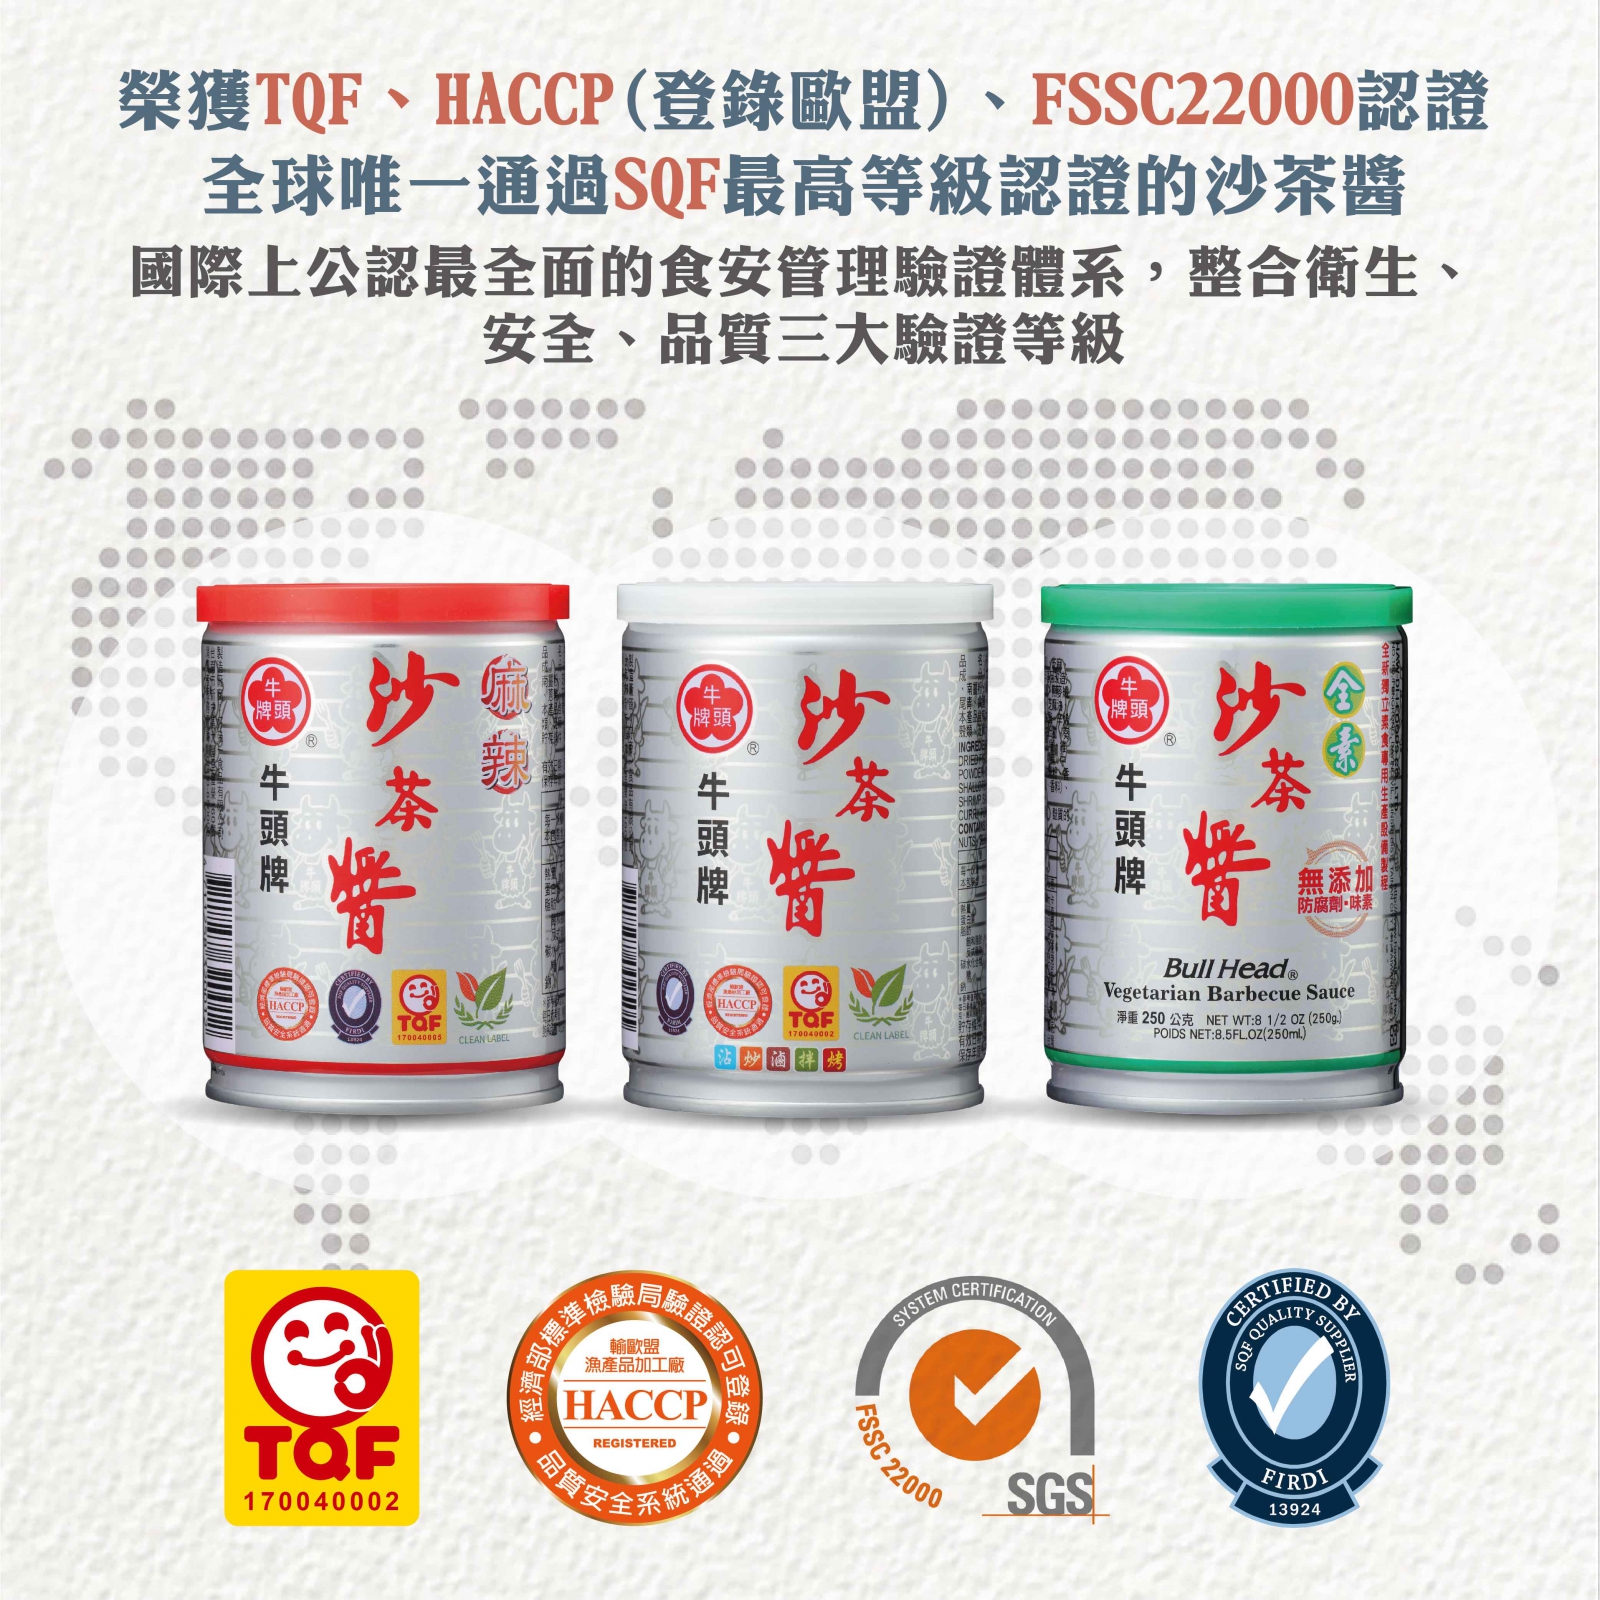 沙茶醬250g為全台灣唯一榮獲多方認證(TQF、HACCP(登錄歐盟)、FSSC22000、SQF與雙潔淨標章)的沙茶醬類產品。